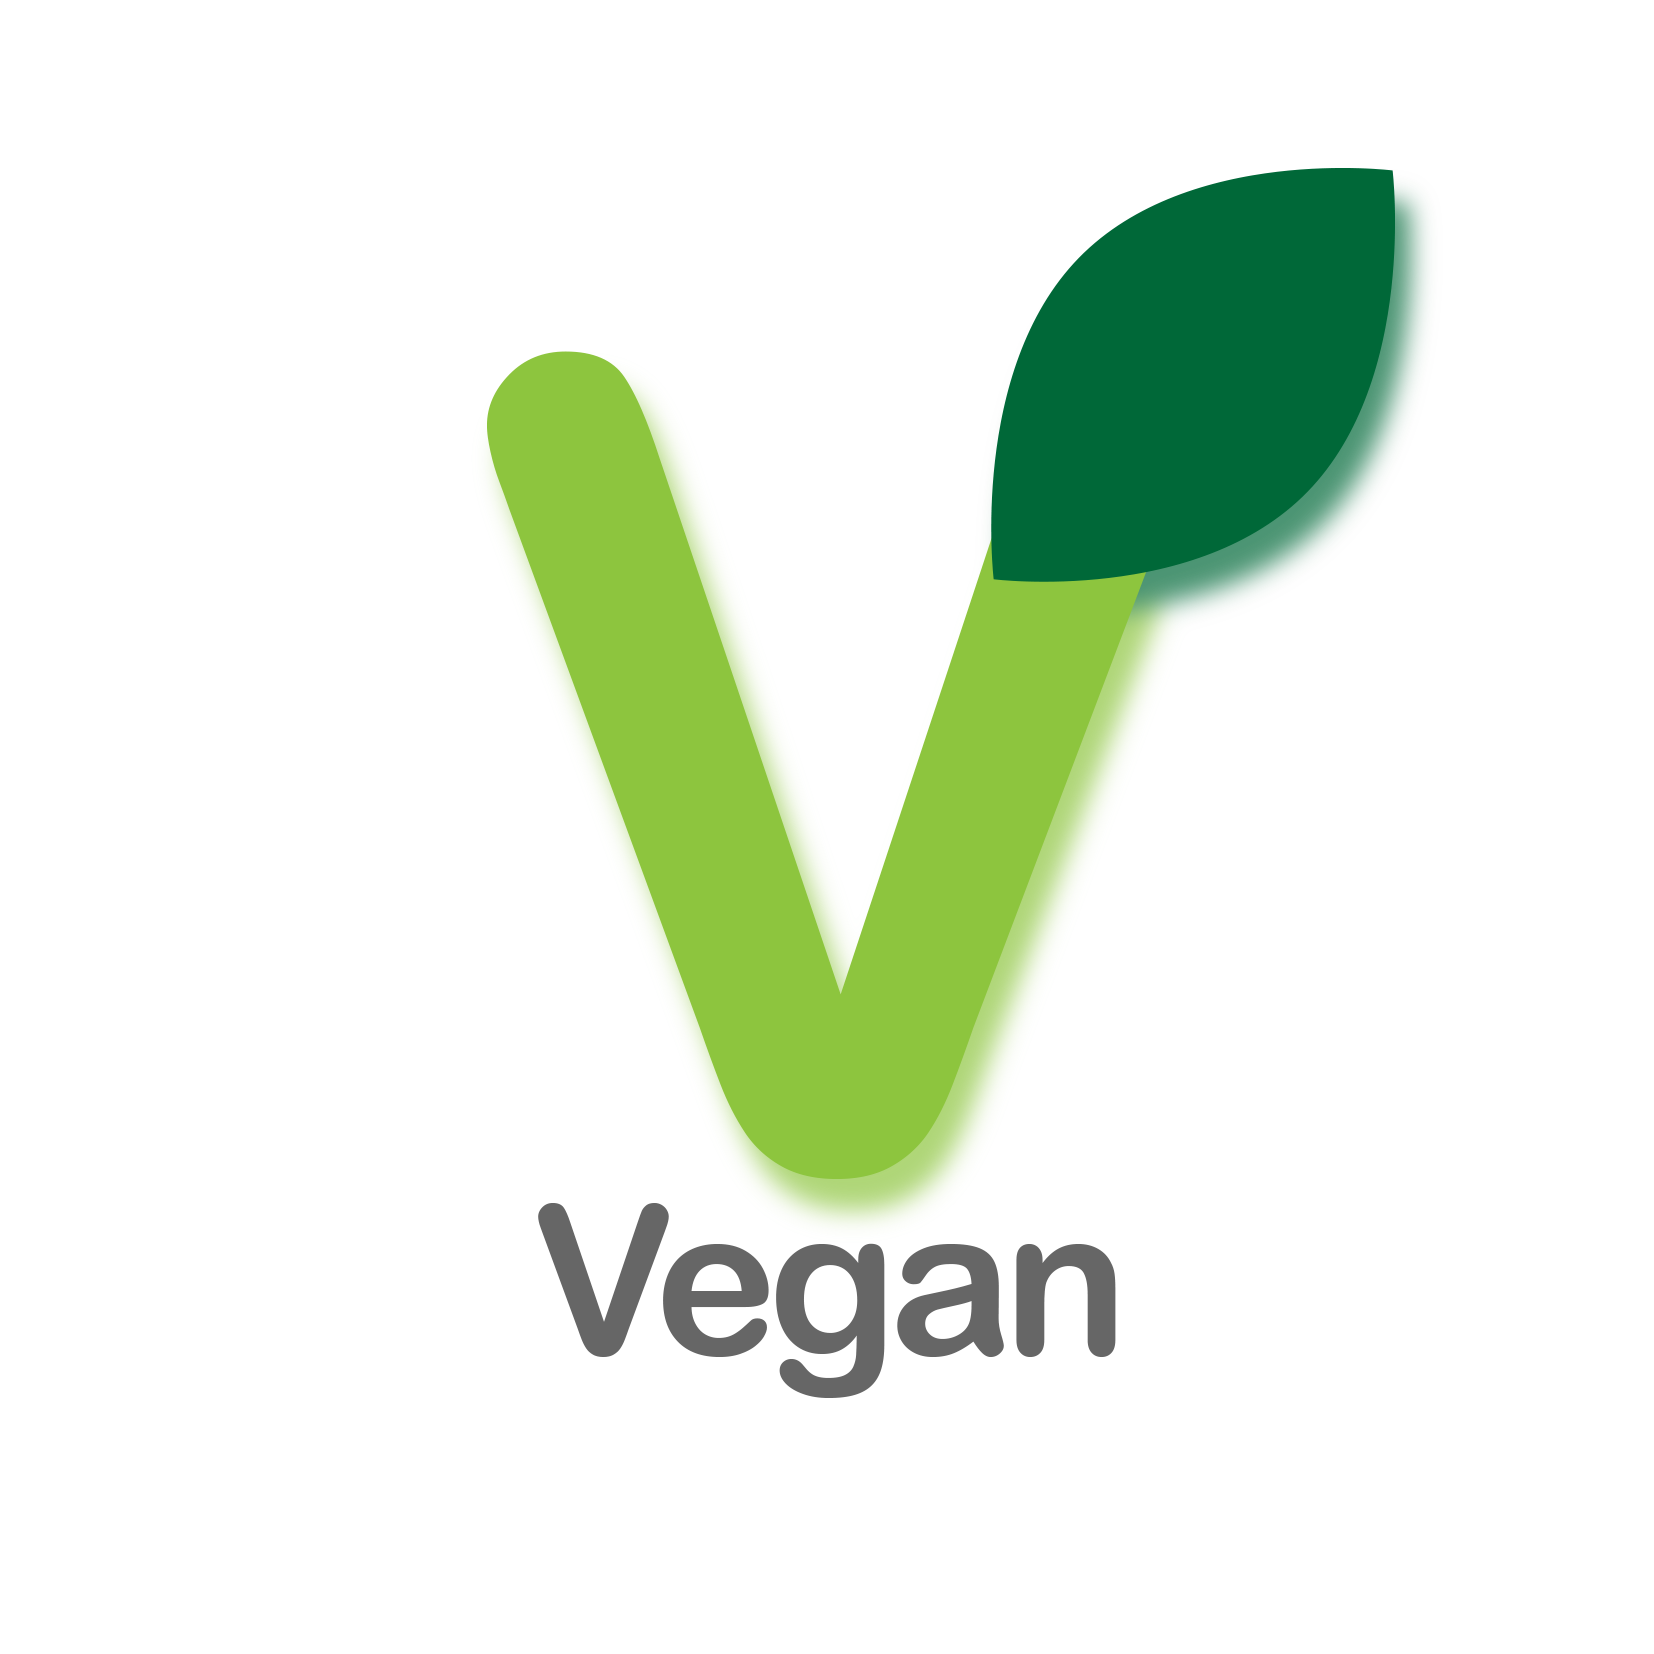 Vegan (Copy)